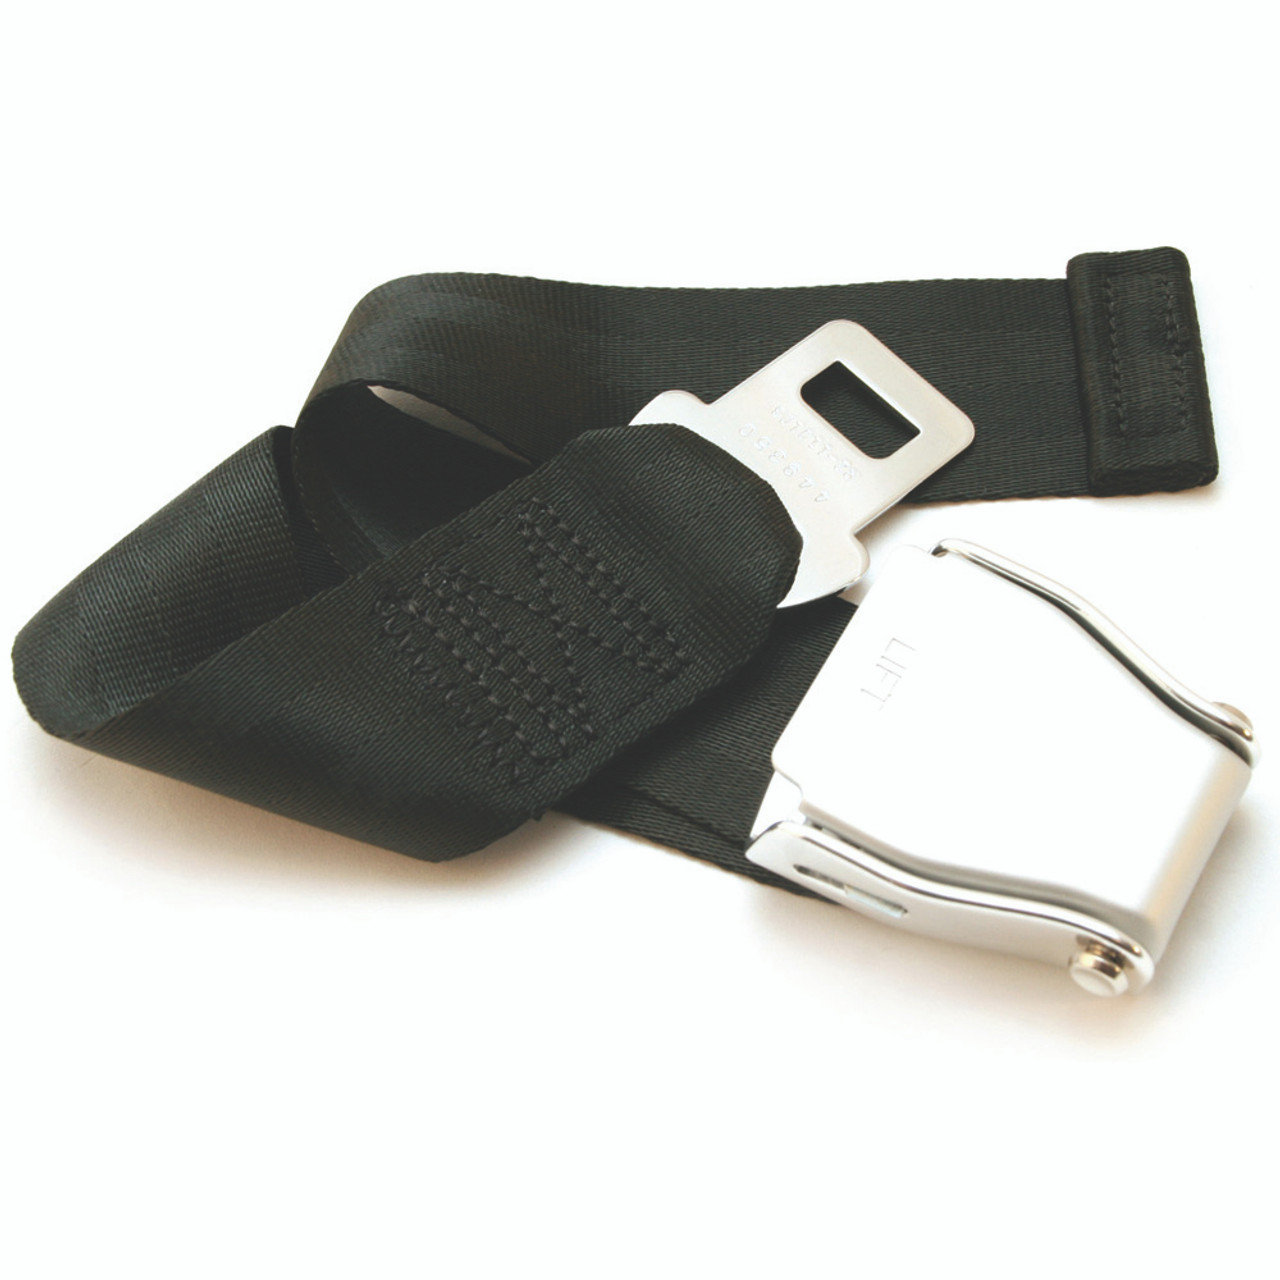 Seat Belt Extender - Certified Seat Belts